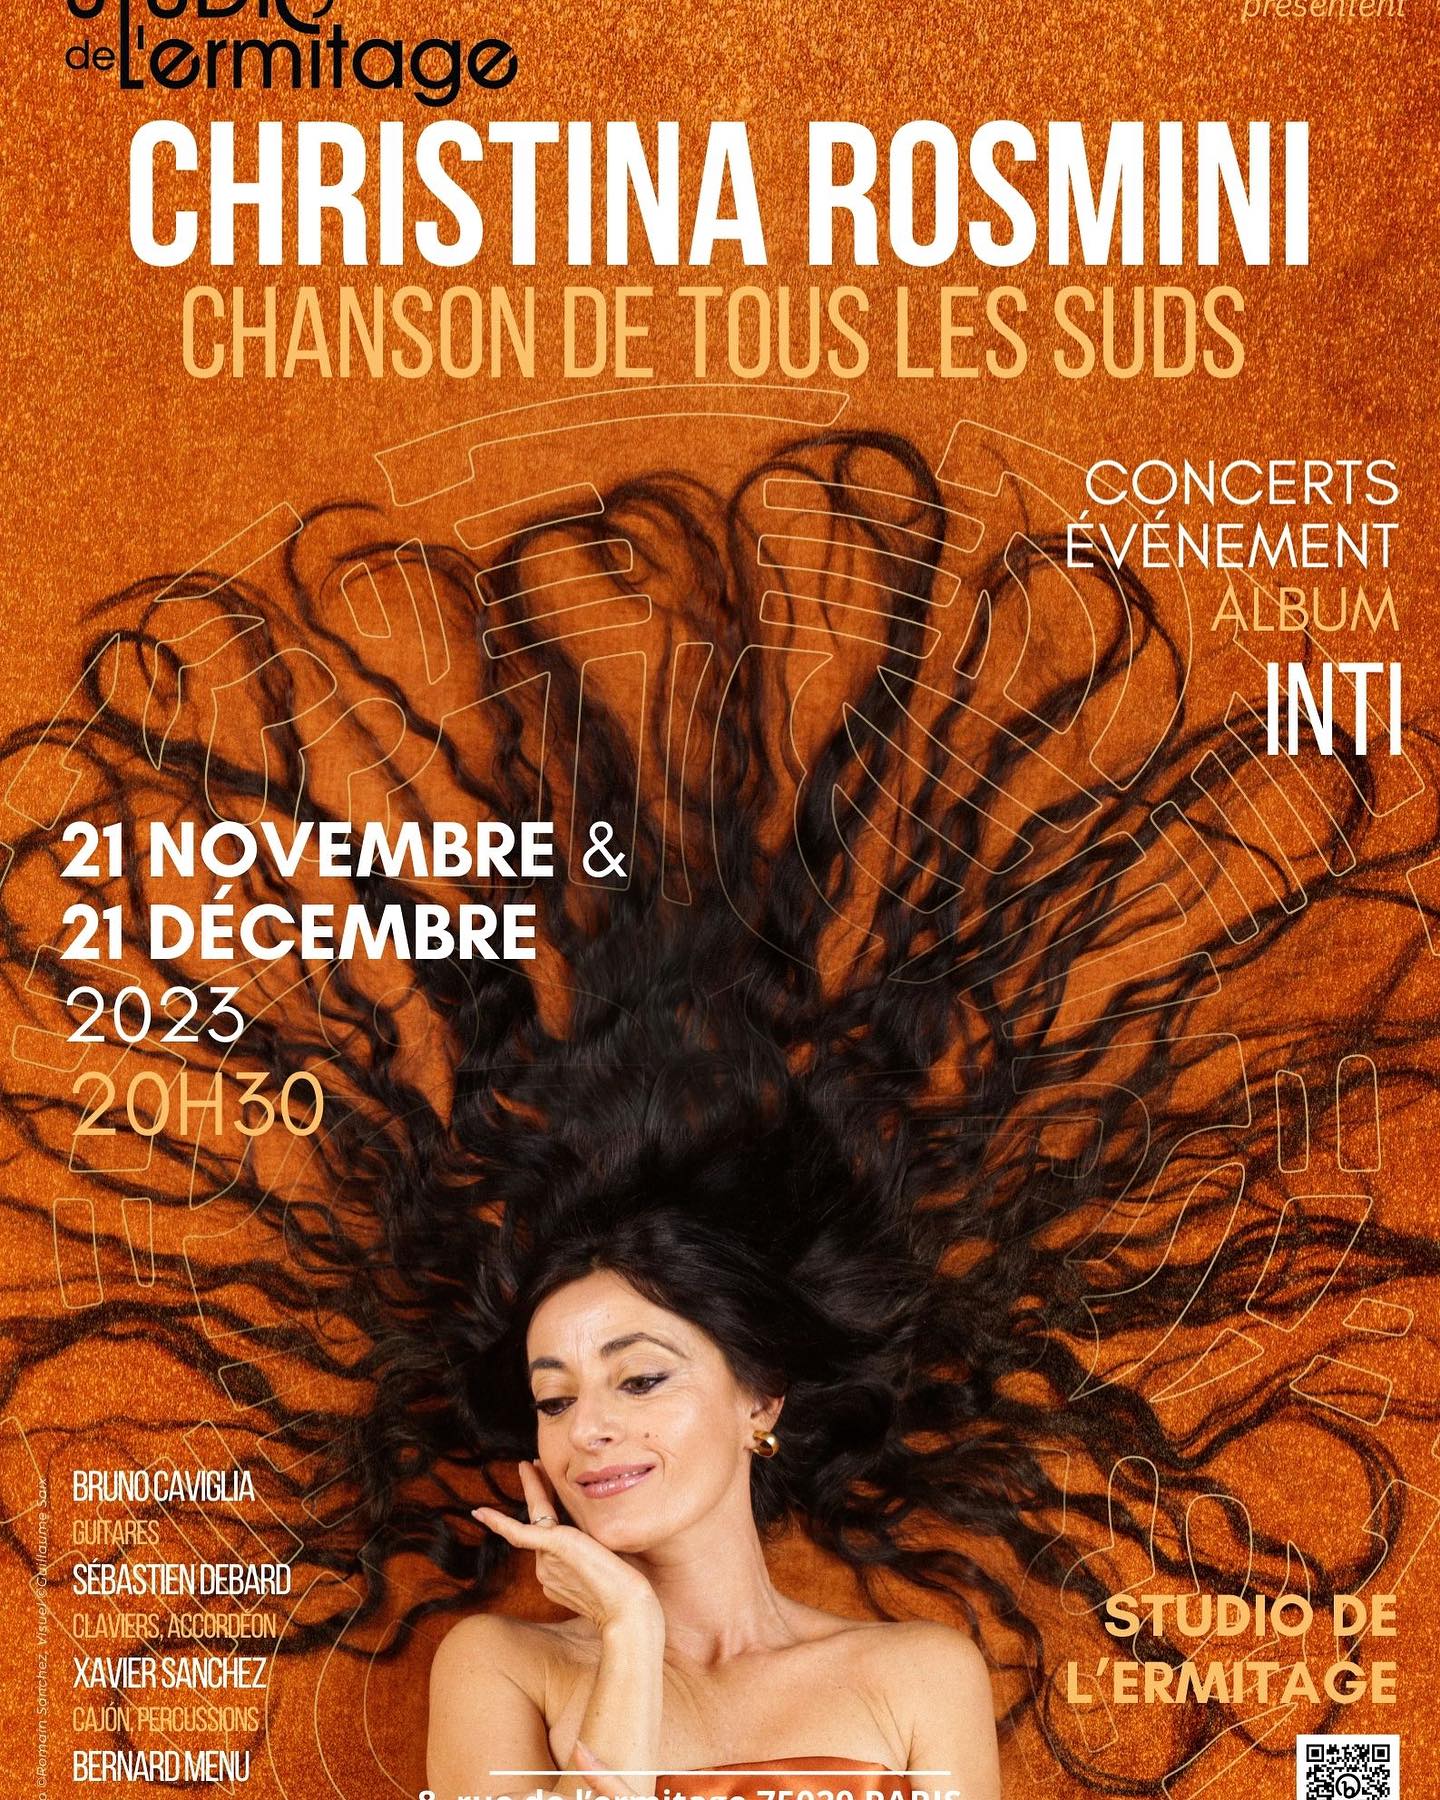 Christina Rosmini annonce deux dates au Studio de l'Ermitage pour l'album INTI